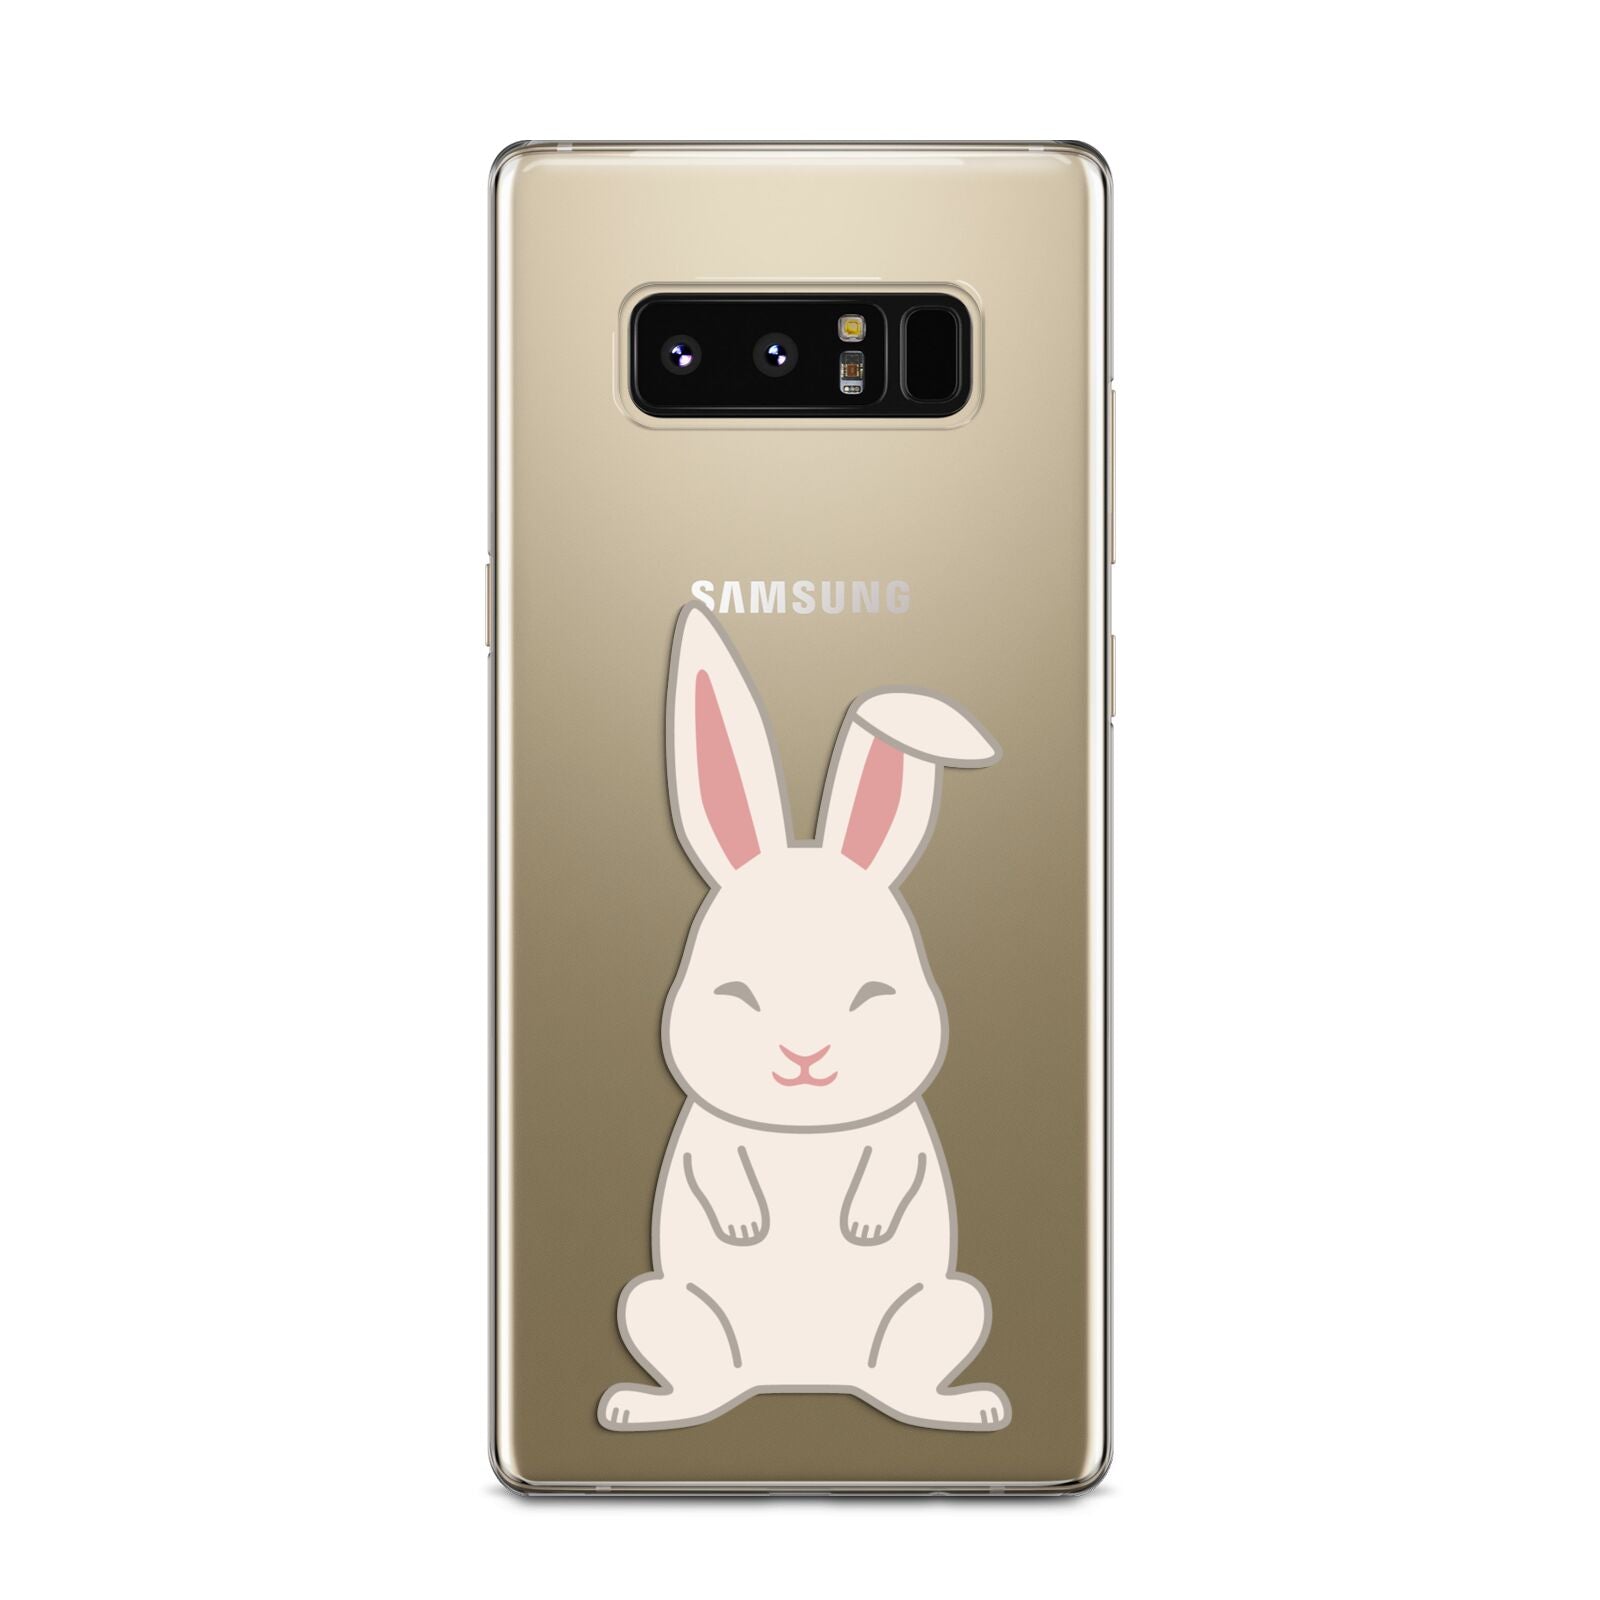 Bunny Samsung Galaxy Note 8 Case